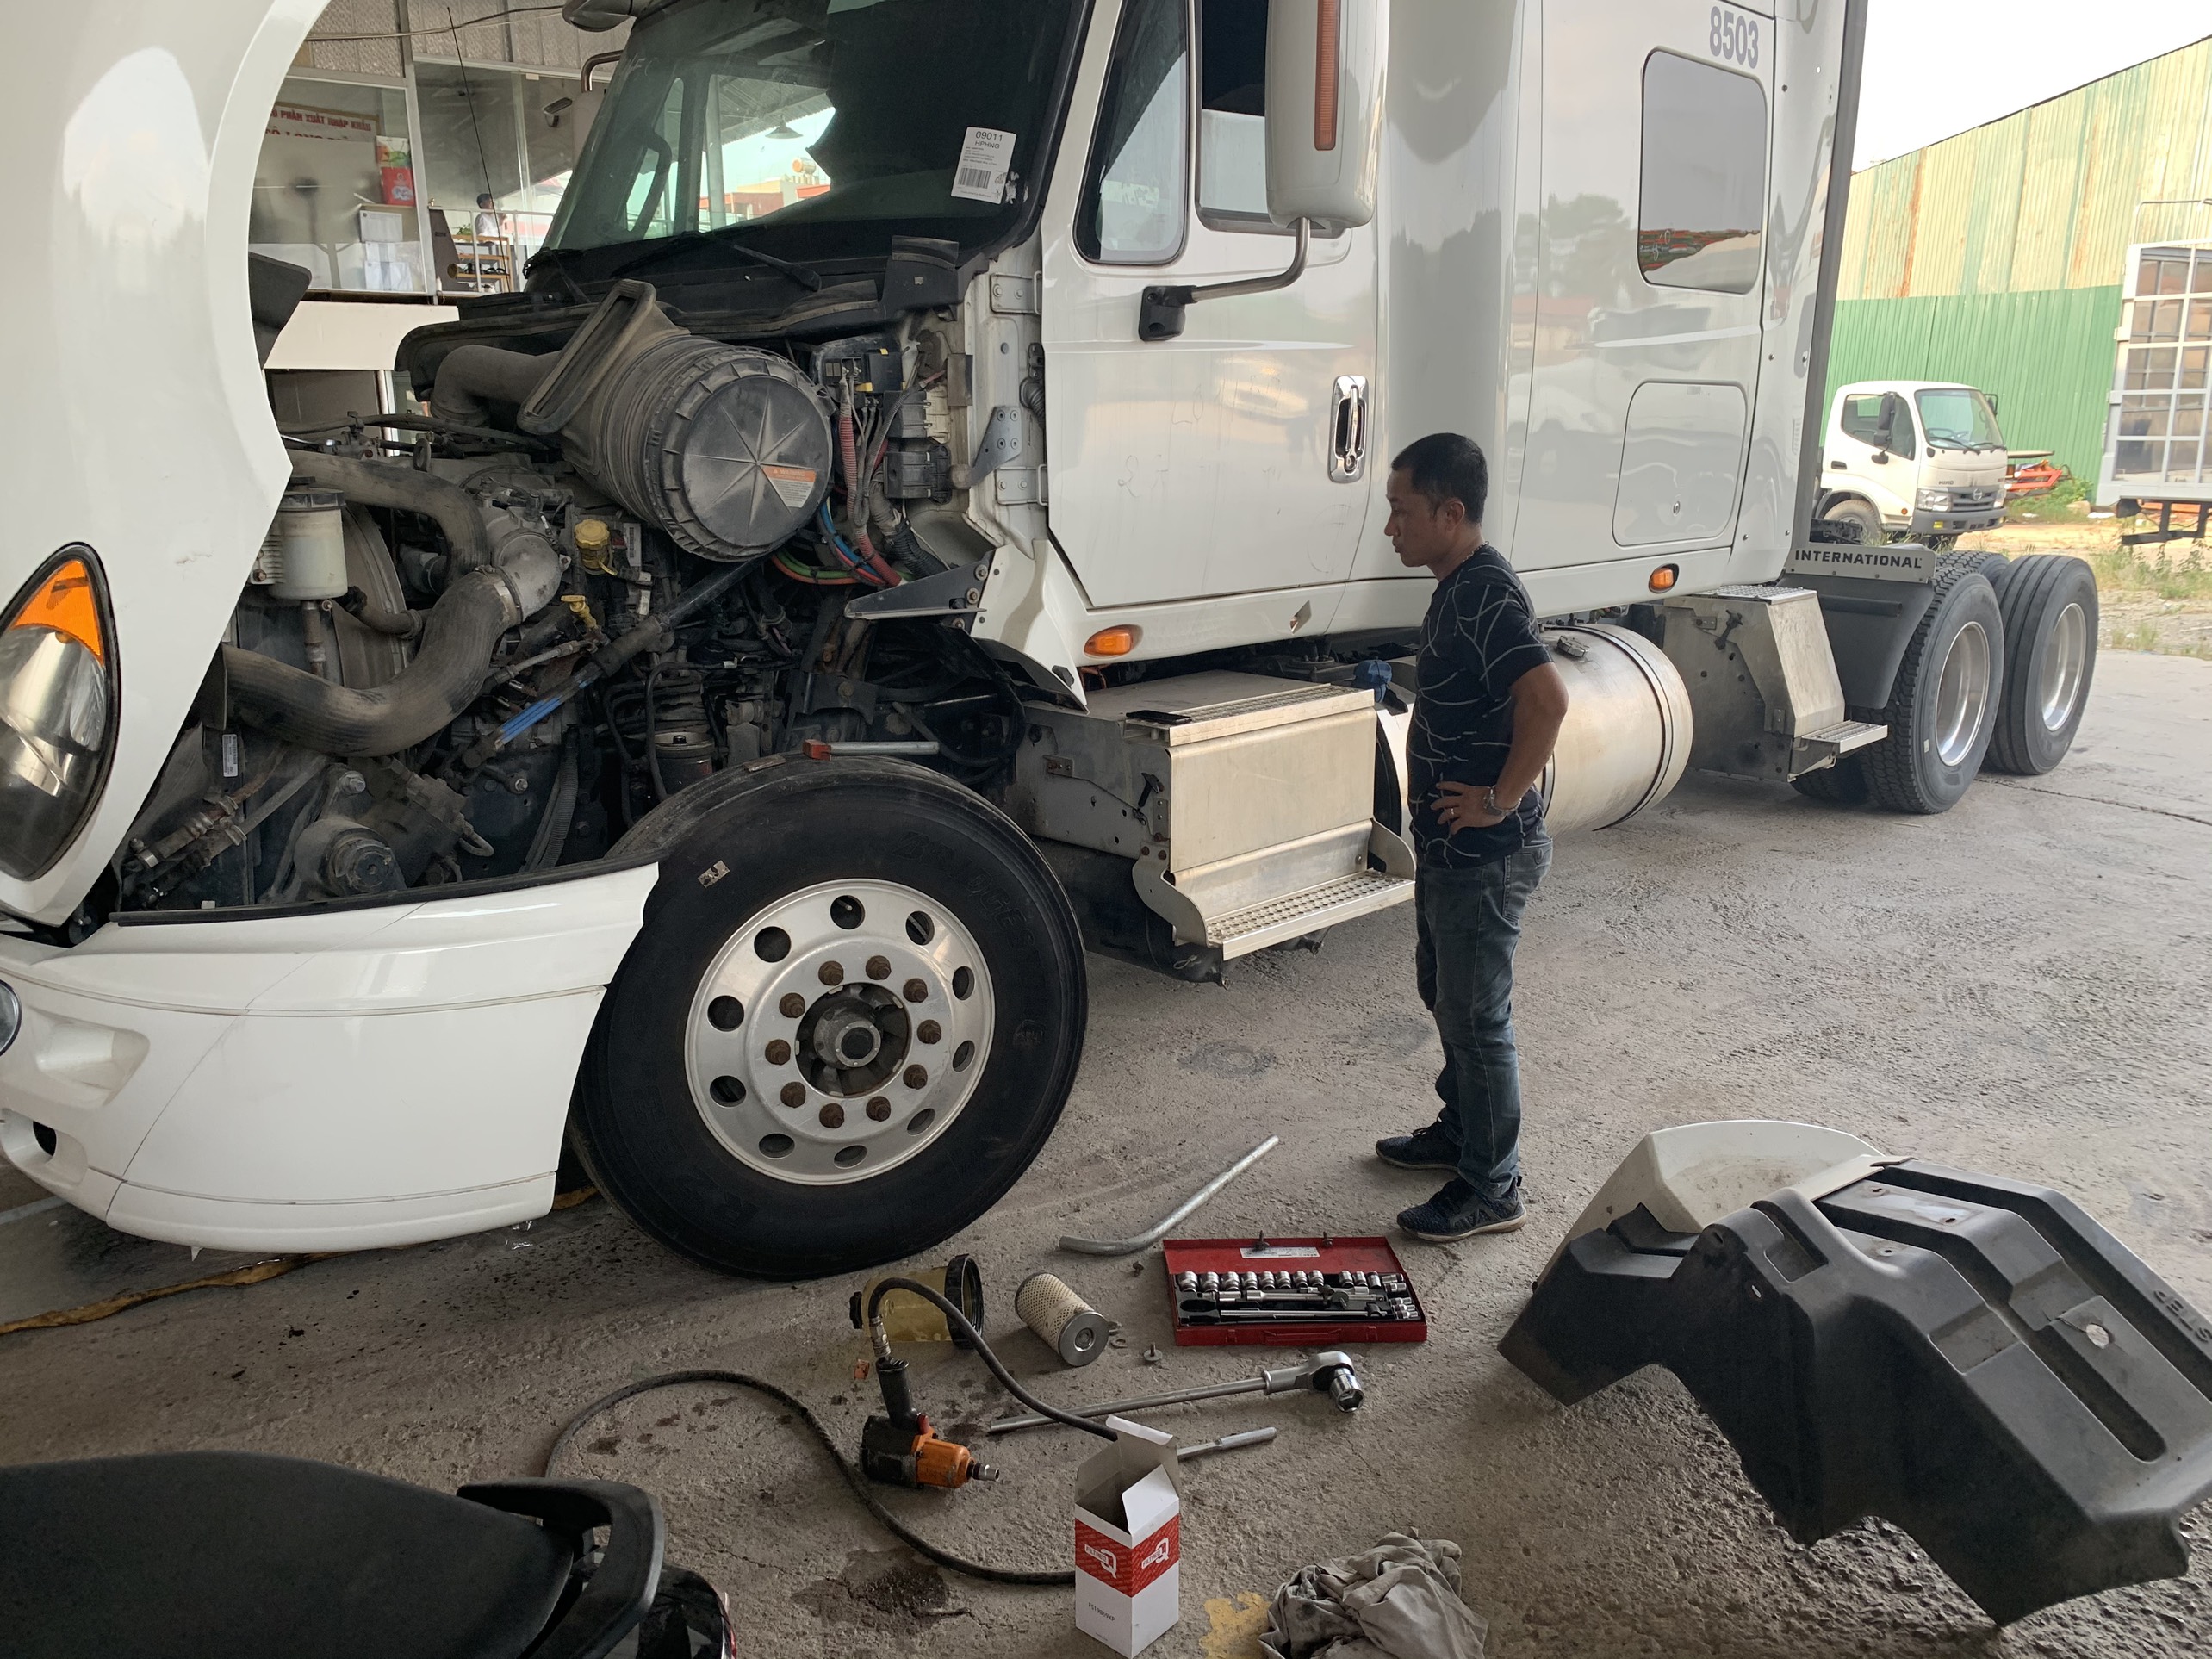 Mua bán xe tải giá rẻ: Gara sửa chữa xe tải uy tín tại Hà Nội